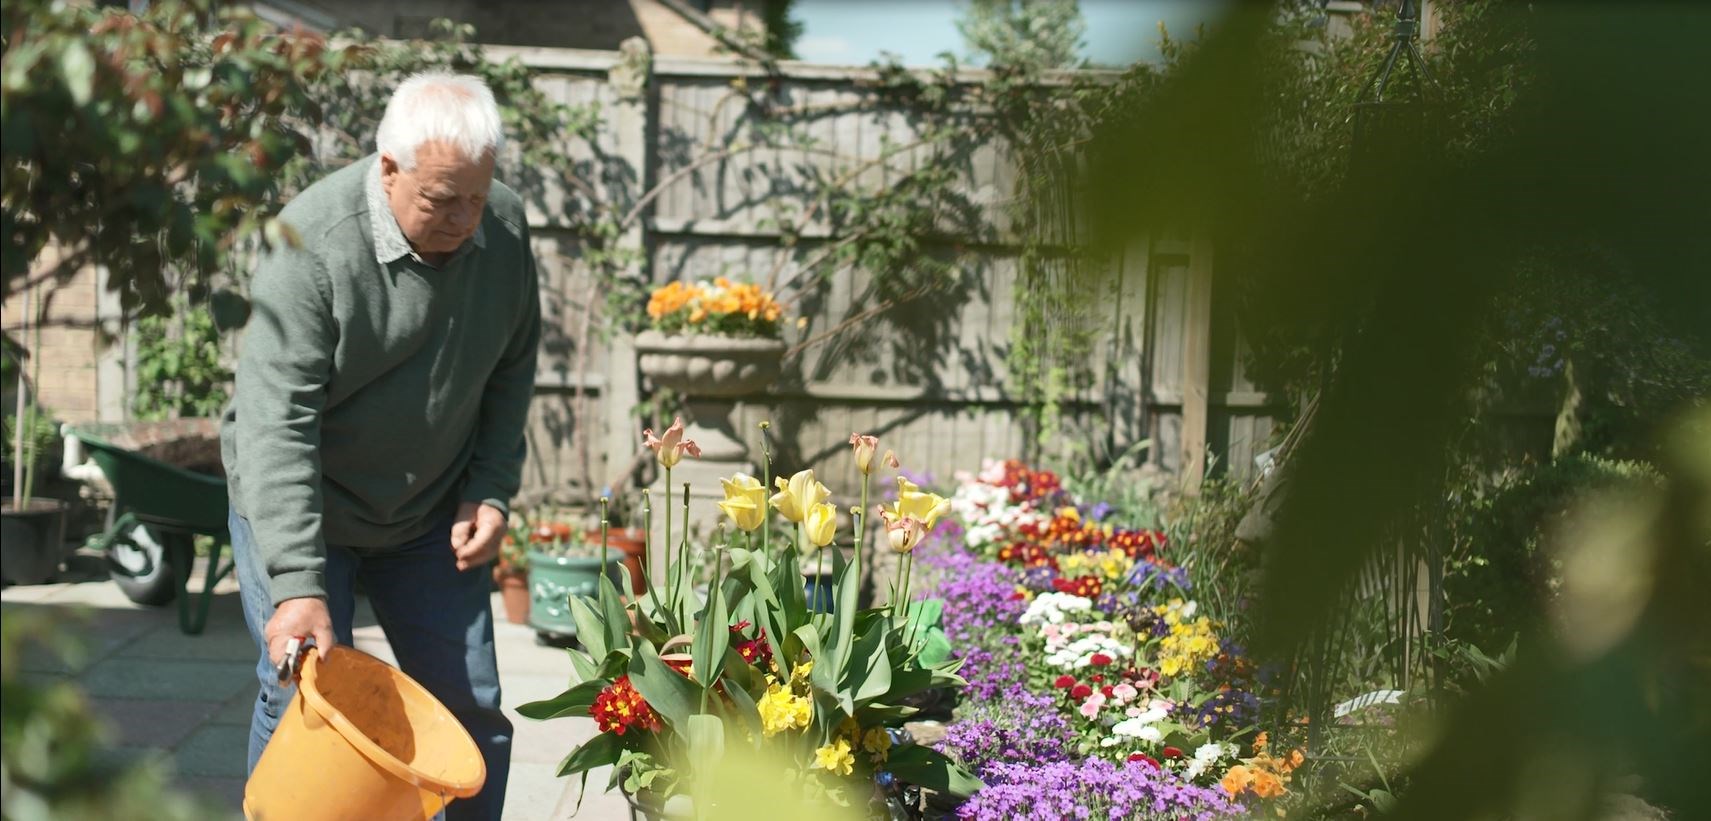 Older man watering flowers in his garden